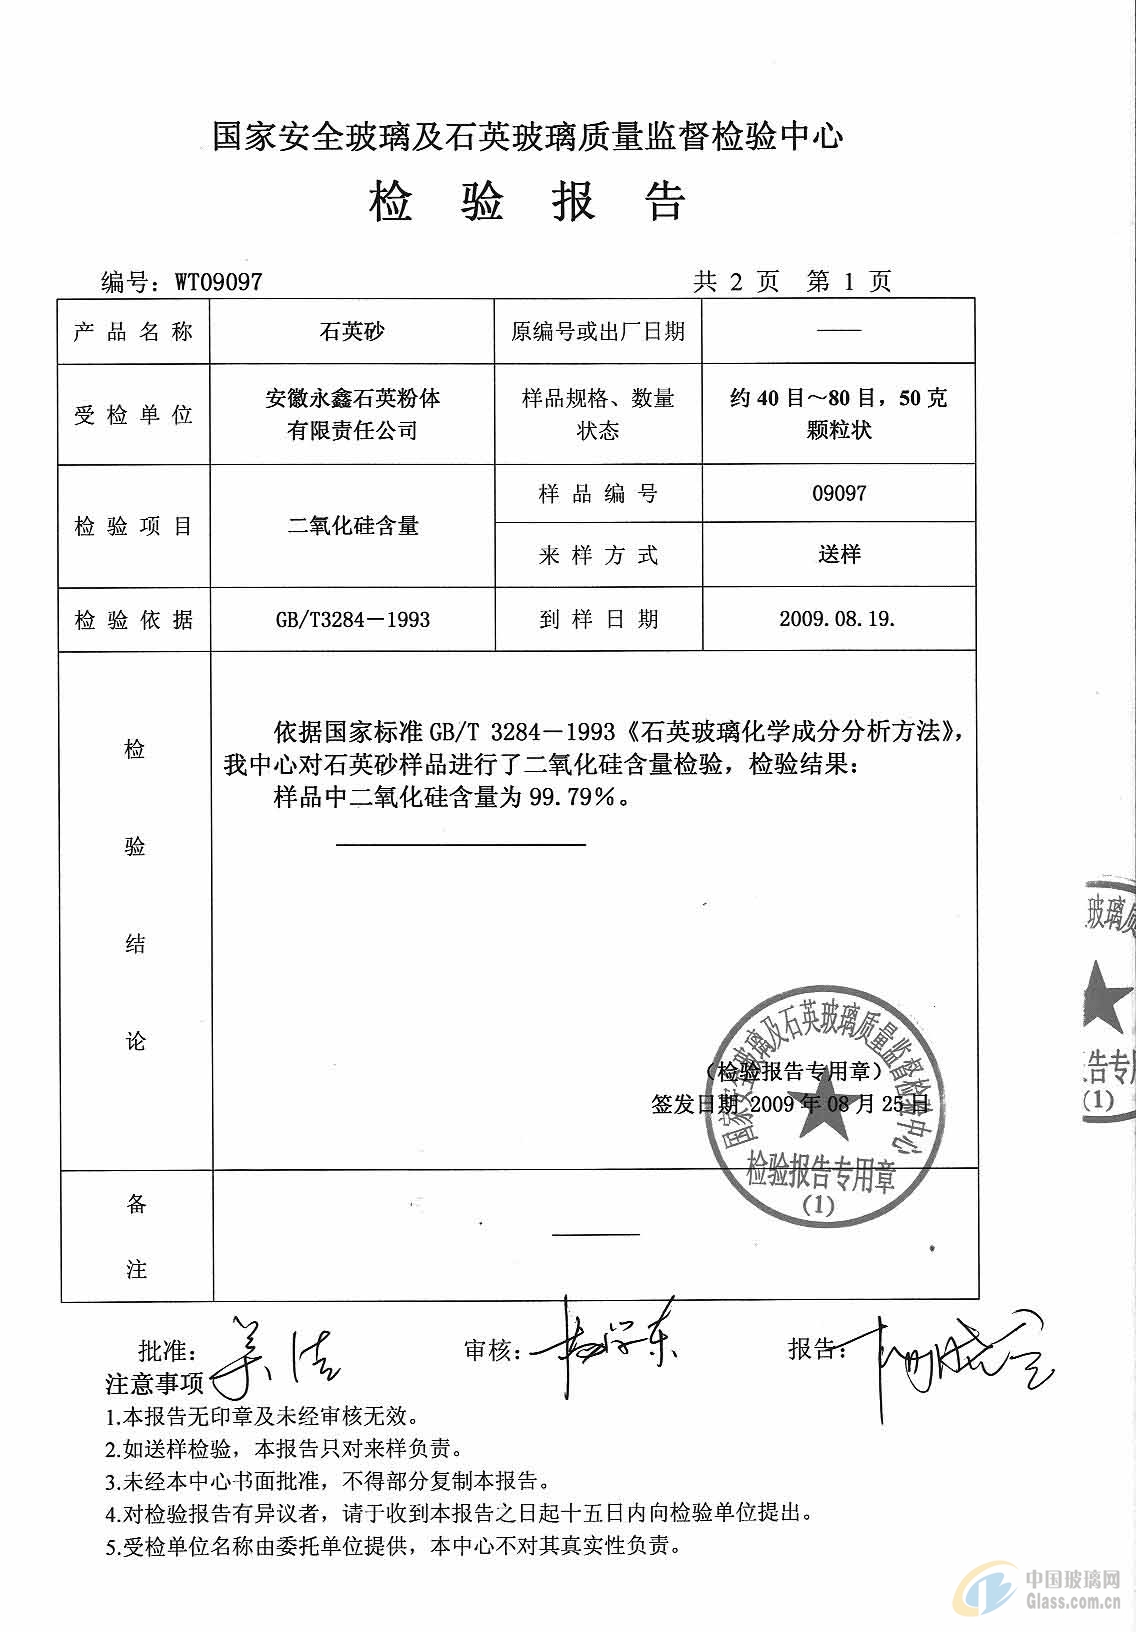 安徽永鑫石英粉体有限责任公司 相册名称:石英矿检验报告 图片格式